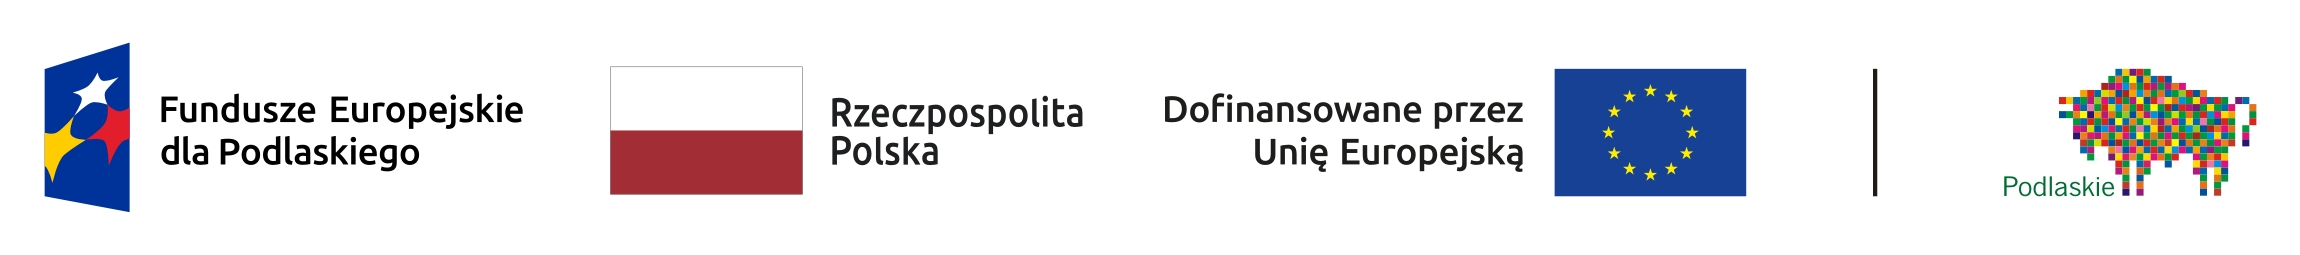 Zestawienie znaków: Fundusze Europejskie dla Podlaskiego, Barwy Rzeczypospolitej Polskiej, logo Unii Europejskiej z dopiskiem dofinansowane przez Unię Europejską, pionowa linia oddzielająca, logo województwa Podlaskiego